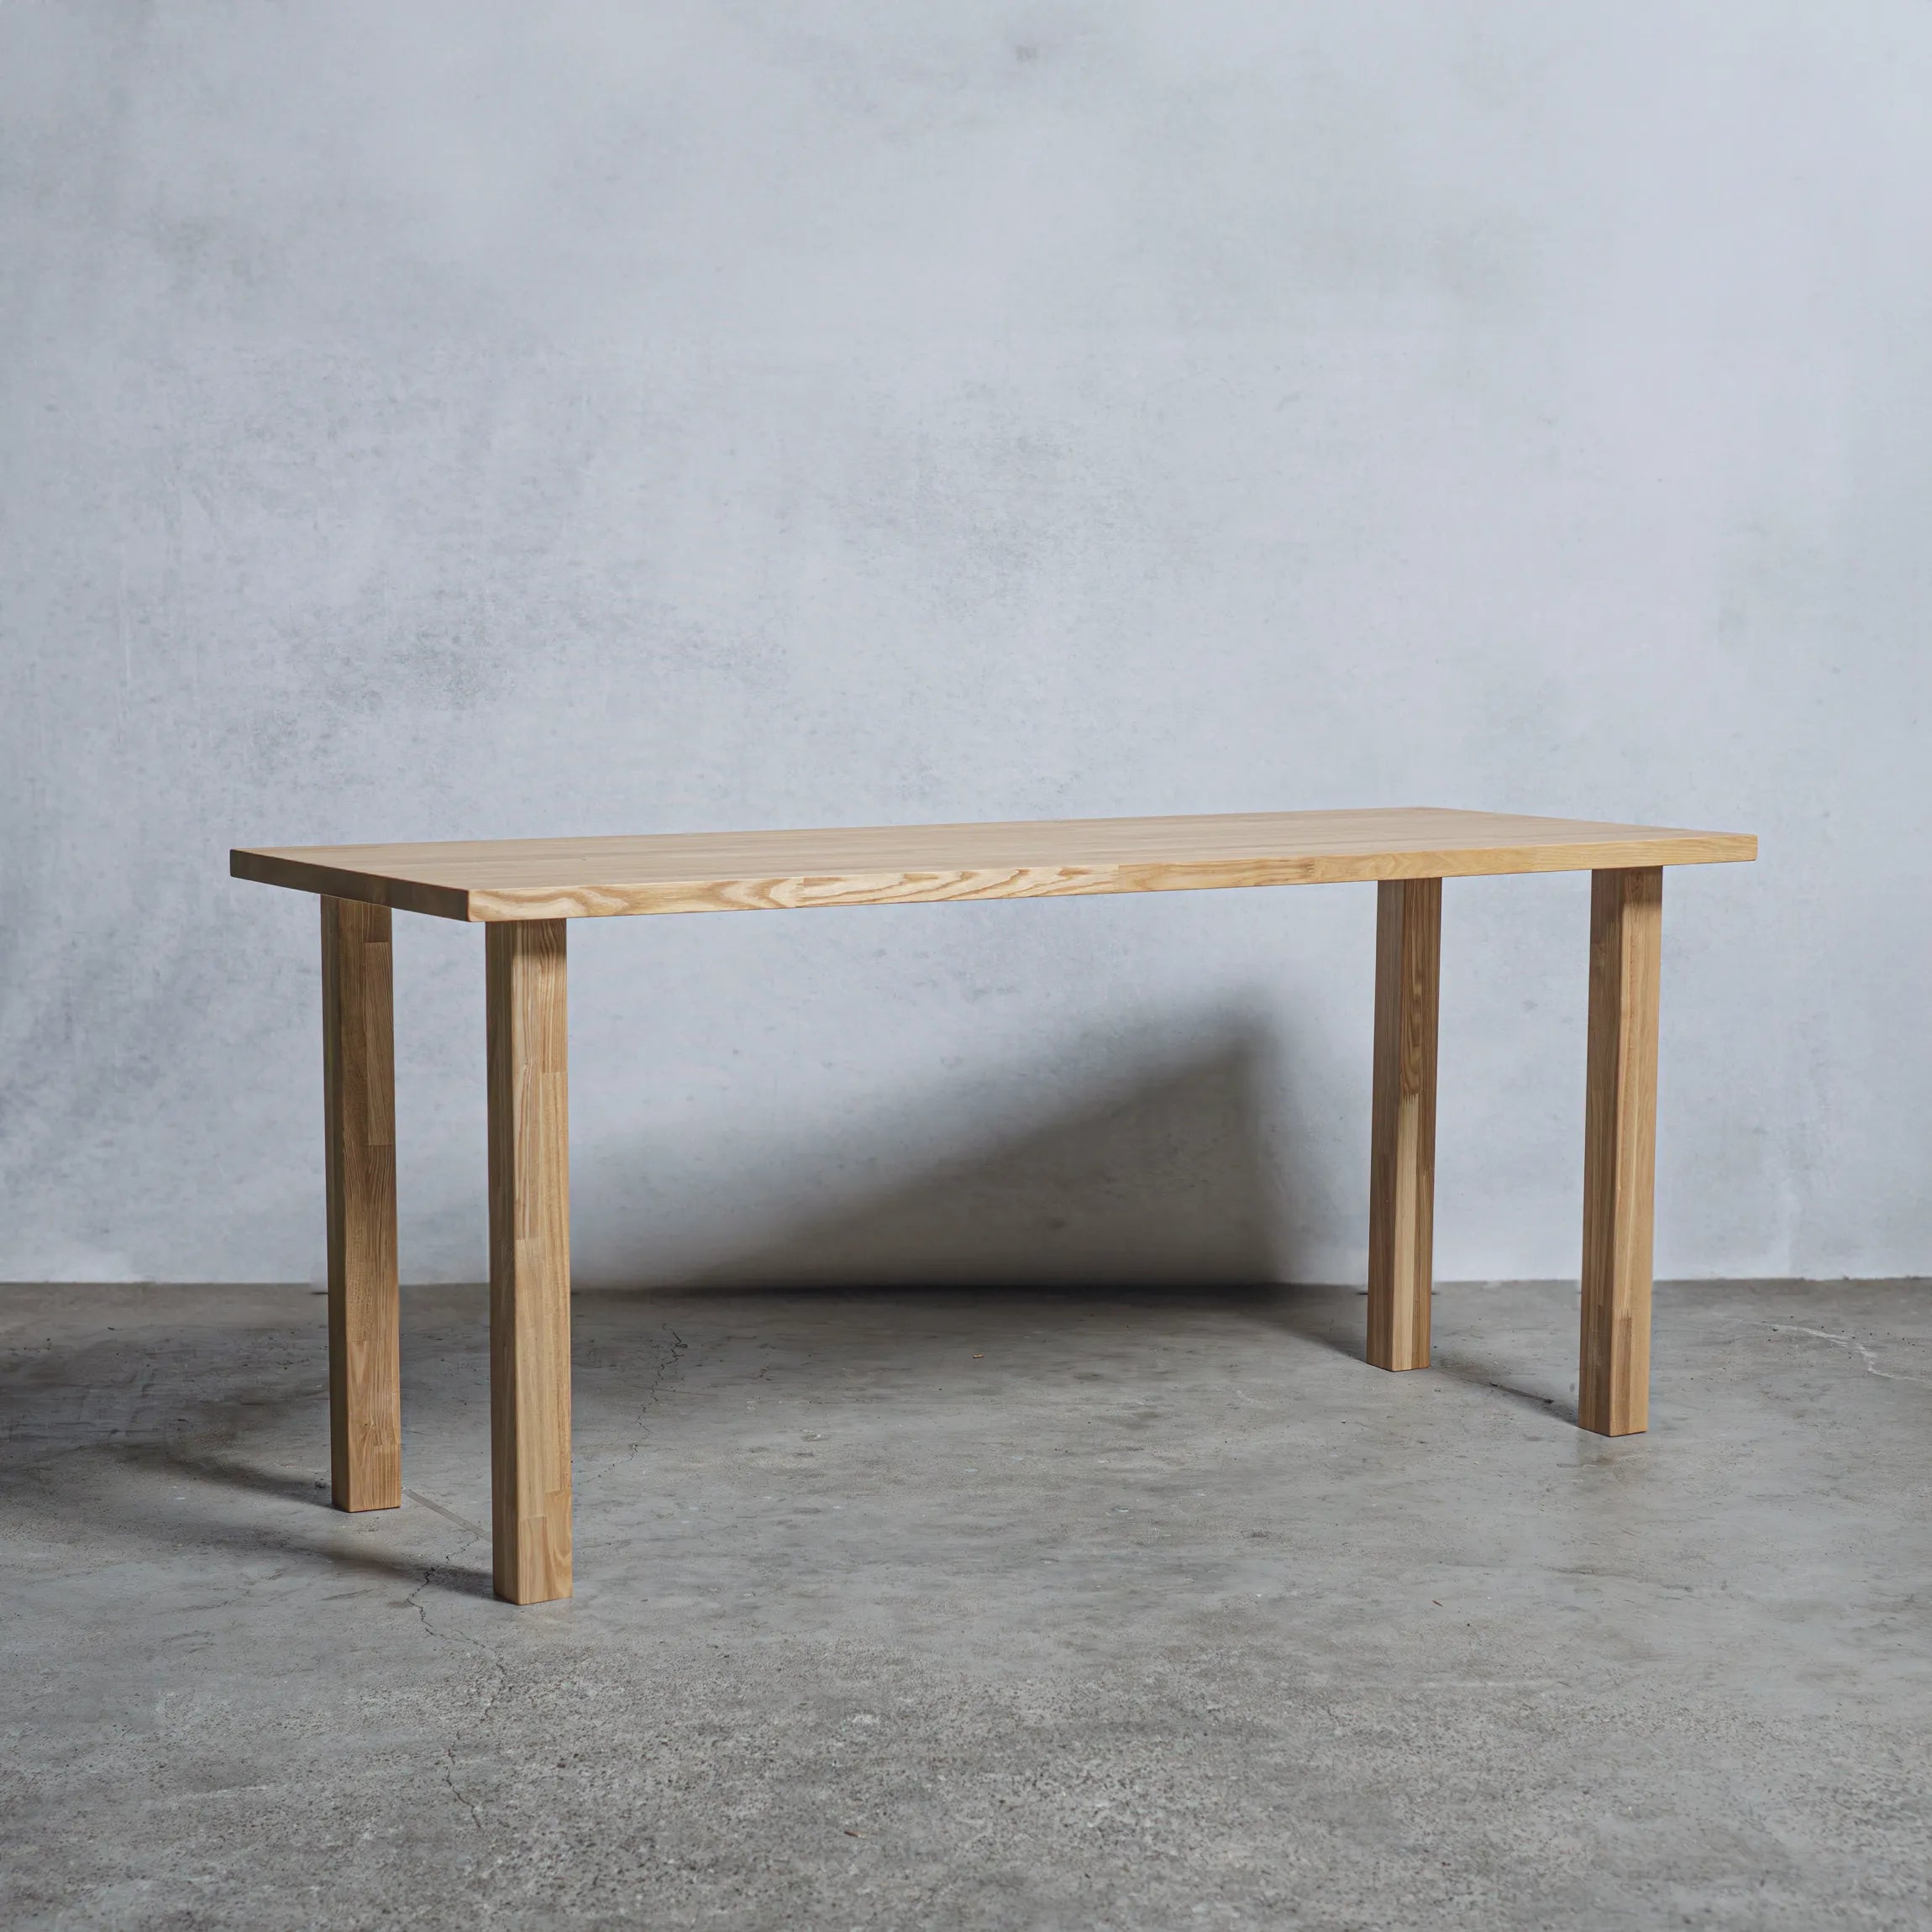 木材テーブル 【ピンク】DIY オーダーメイド